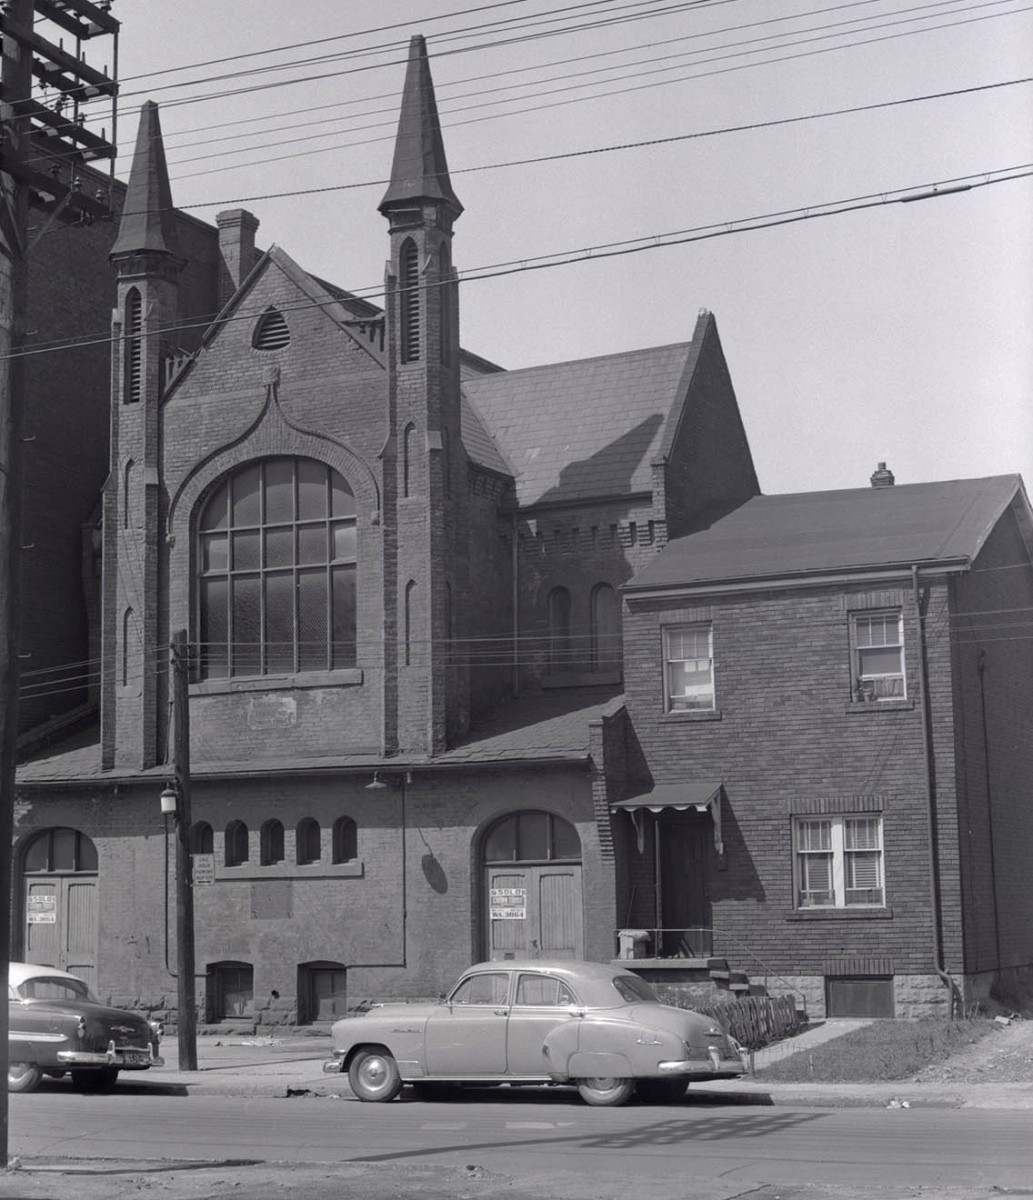 The British Methodist Episcopal church on Chestnut St